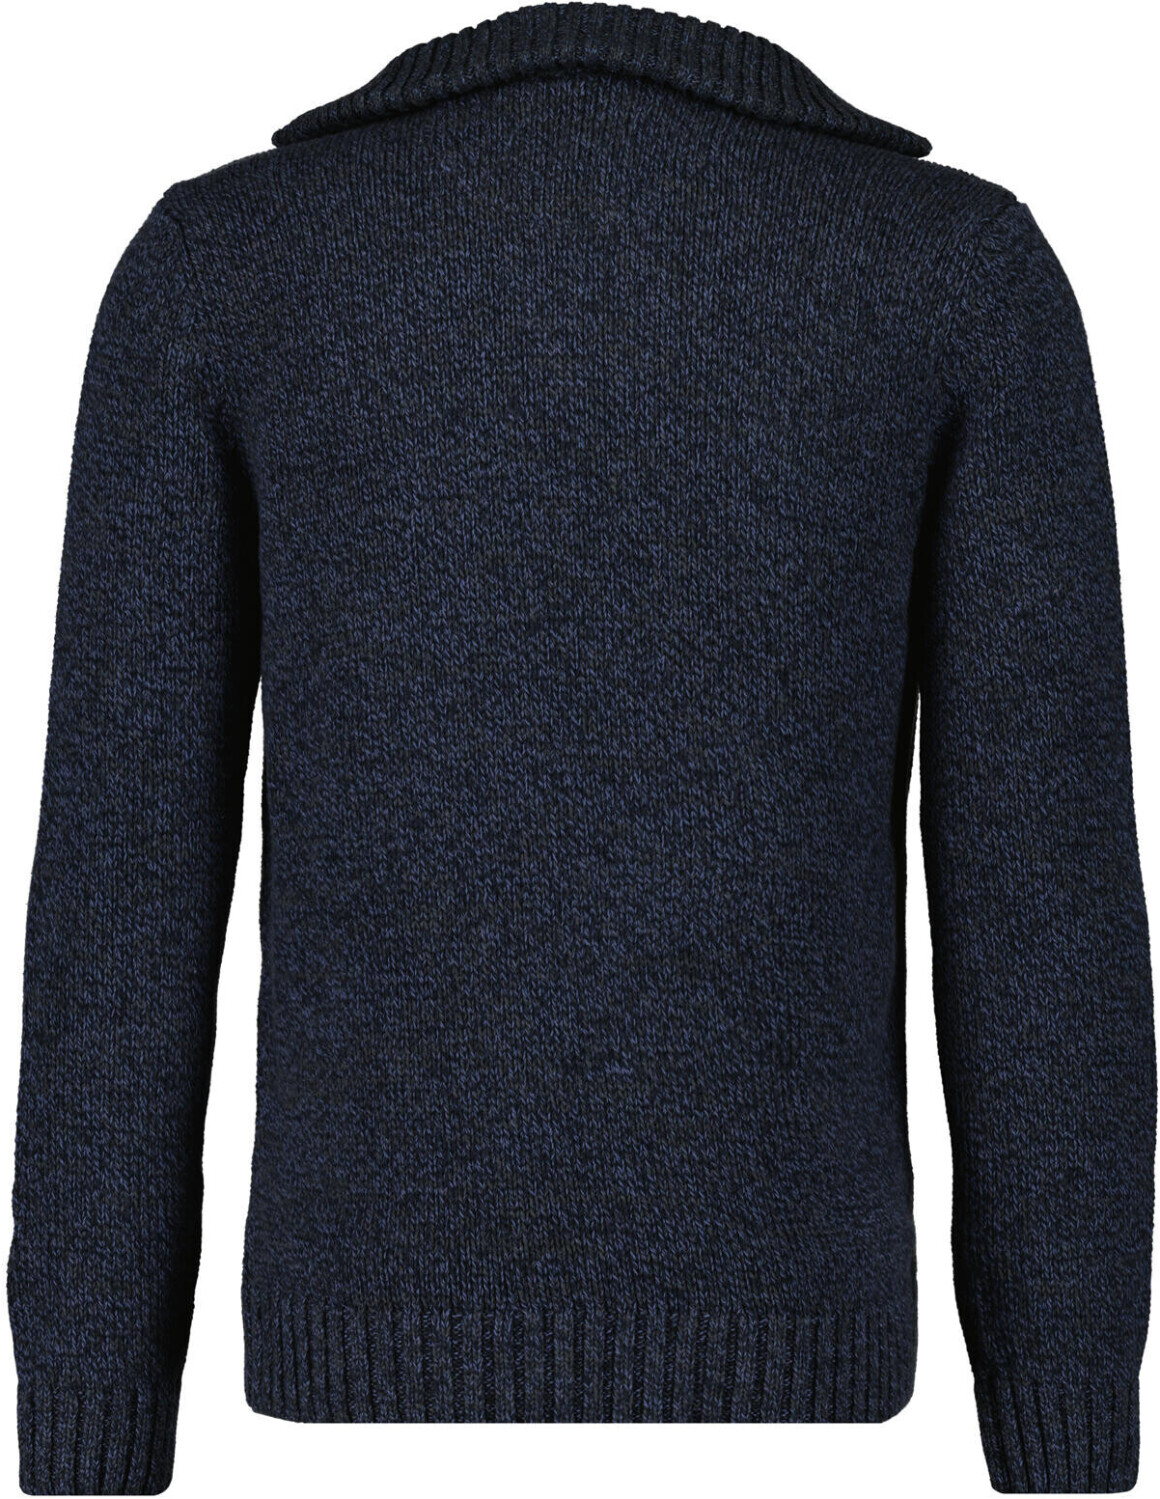 Troyer mit | bei Preisvergleich ab 69,99 (502662-170) mouliniert Ragman € Tweed-Pullover dunkelblau-grau